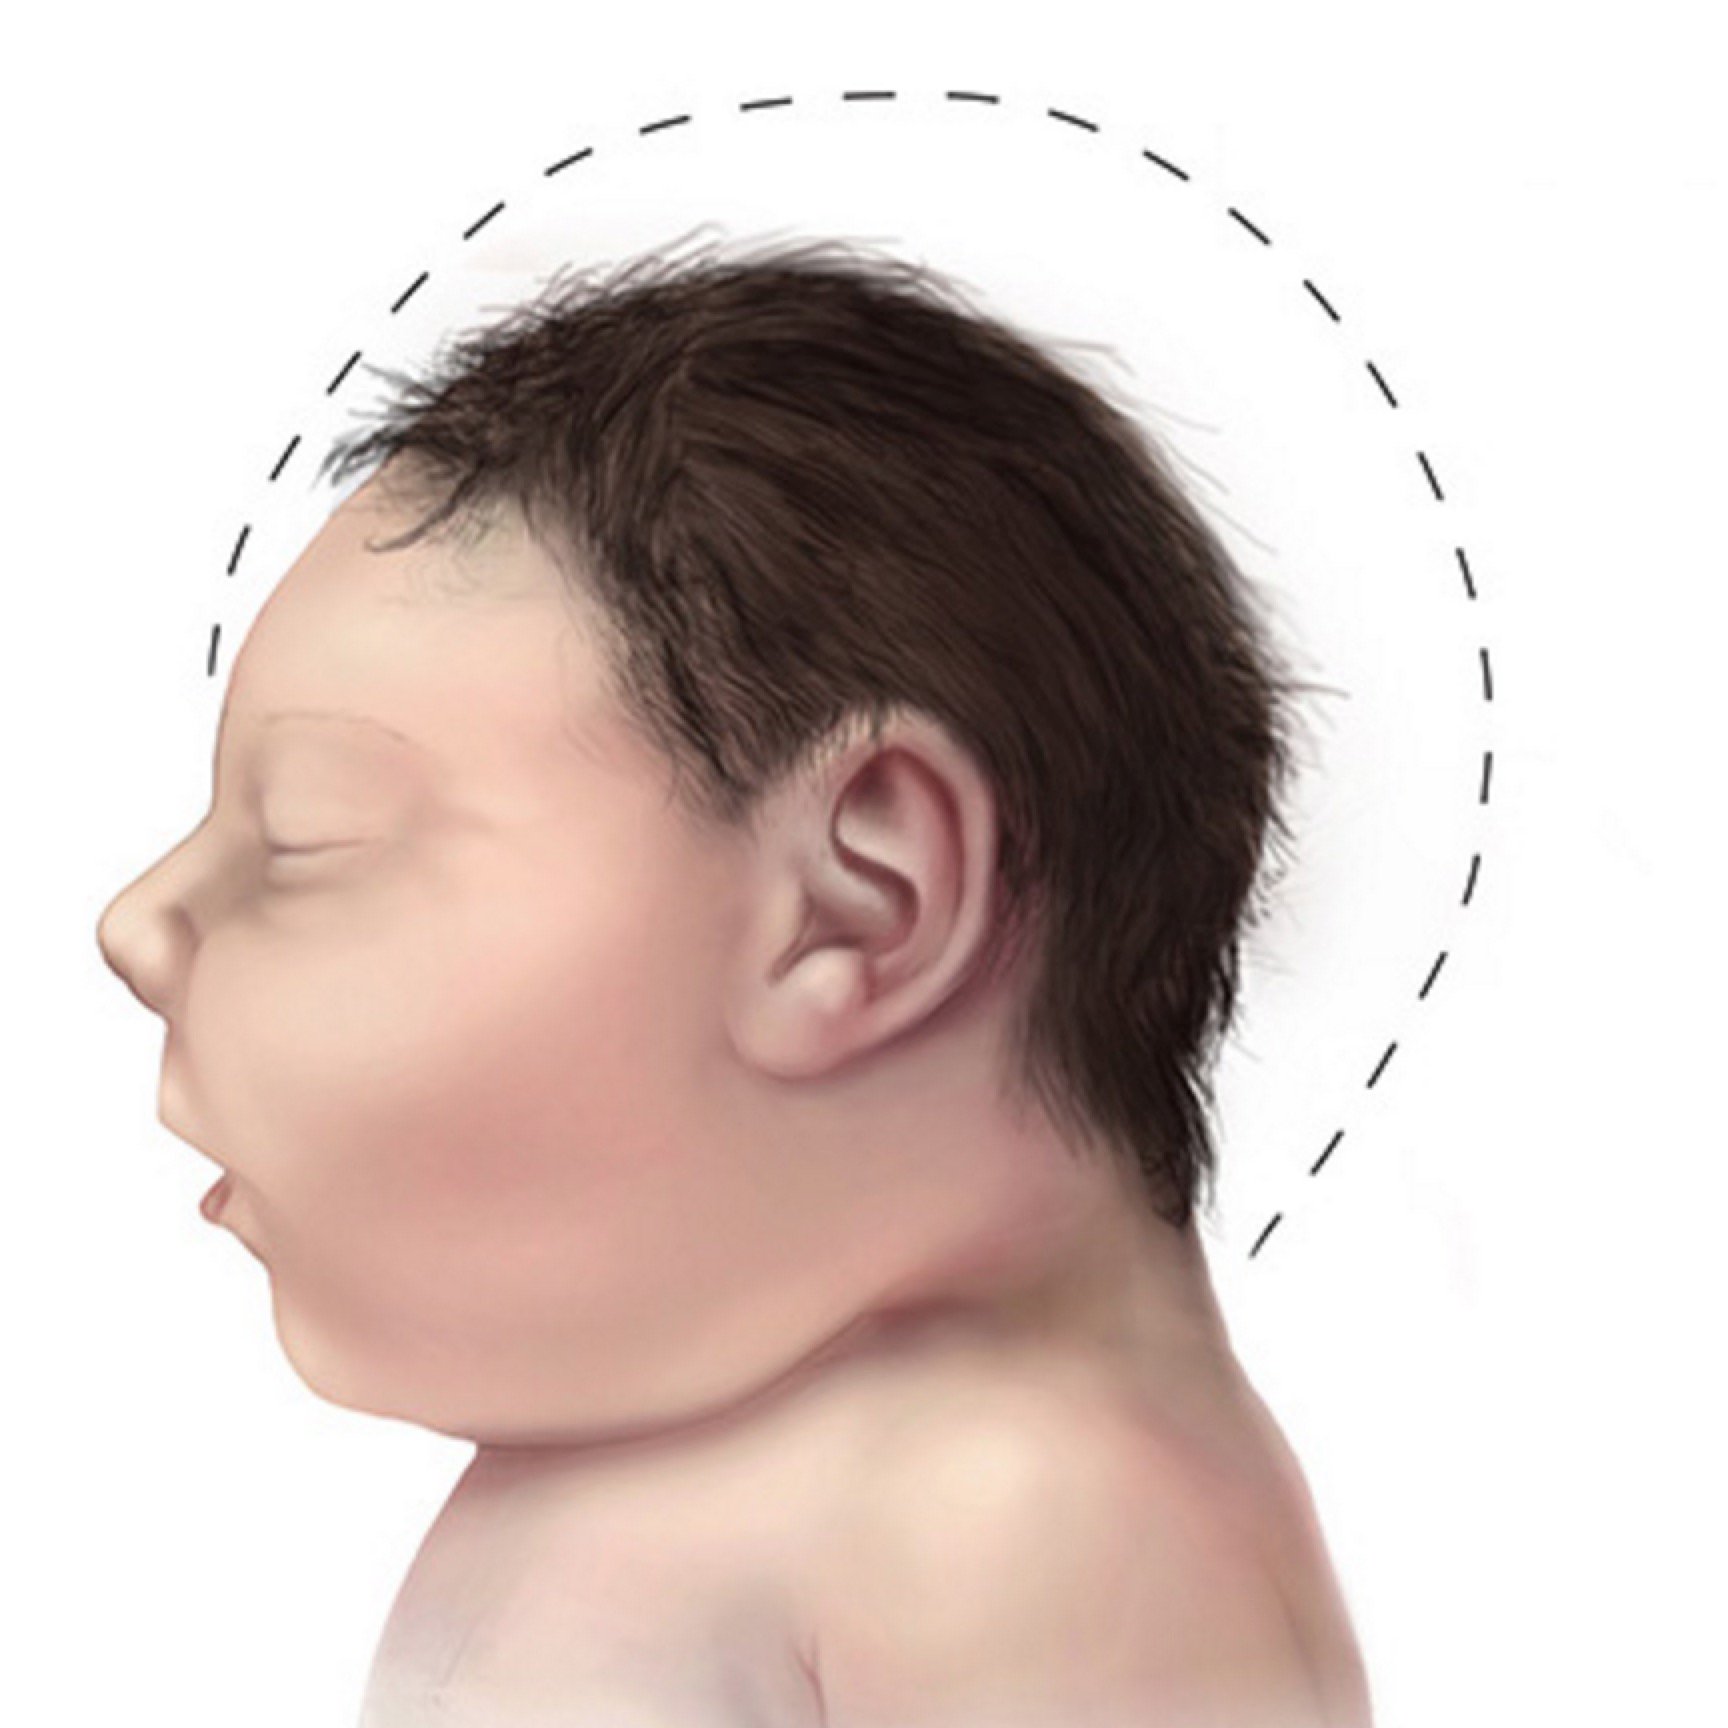 婴儿歪头症有哪些特征（宝宝头型是否正常）-幼儿百科-魔术铺